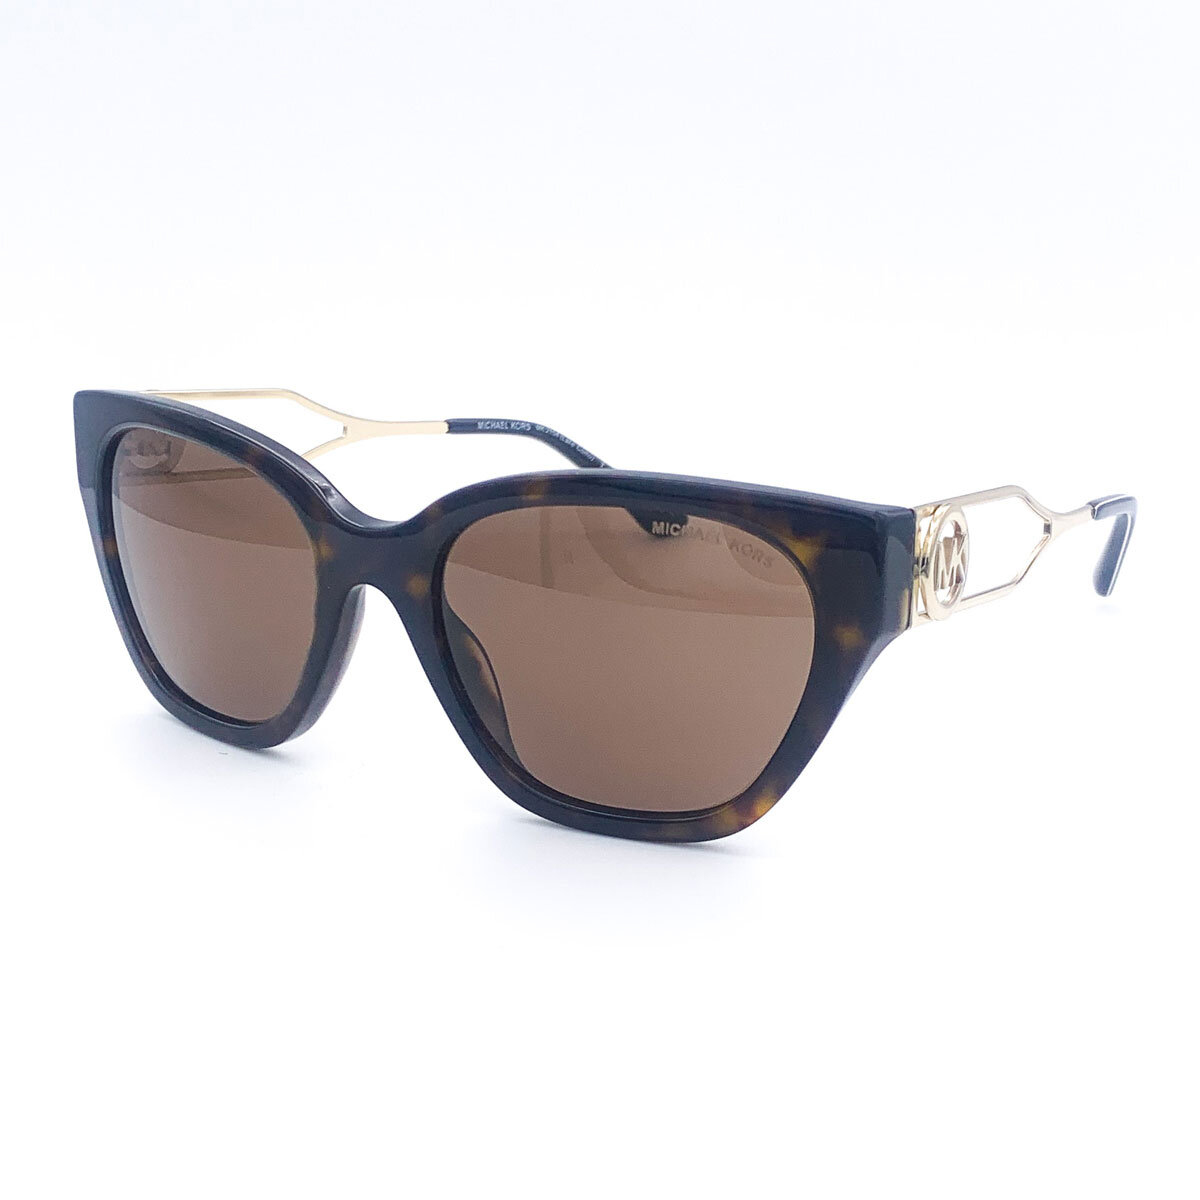 Michael Kors Lake Como Tortoise Shell Sunglasses with Bro...